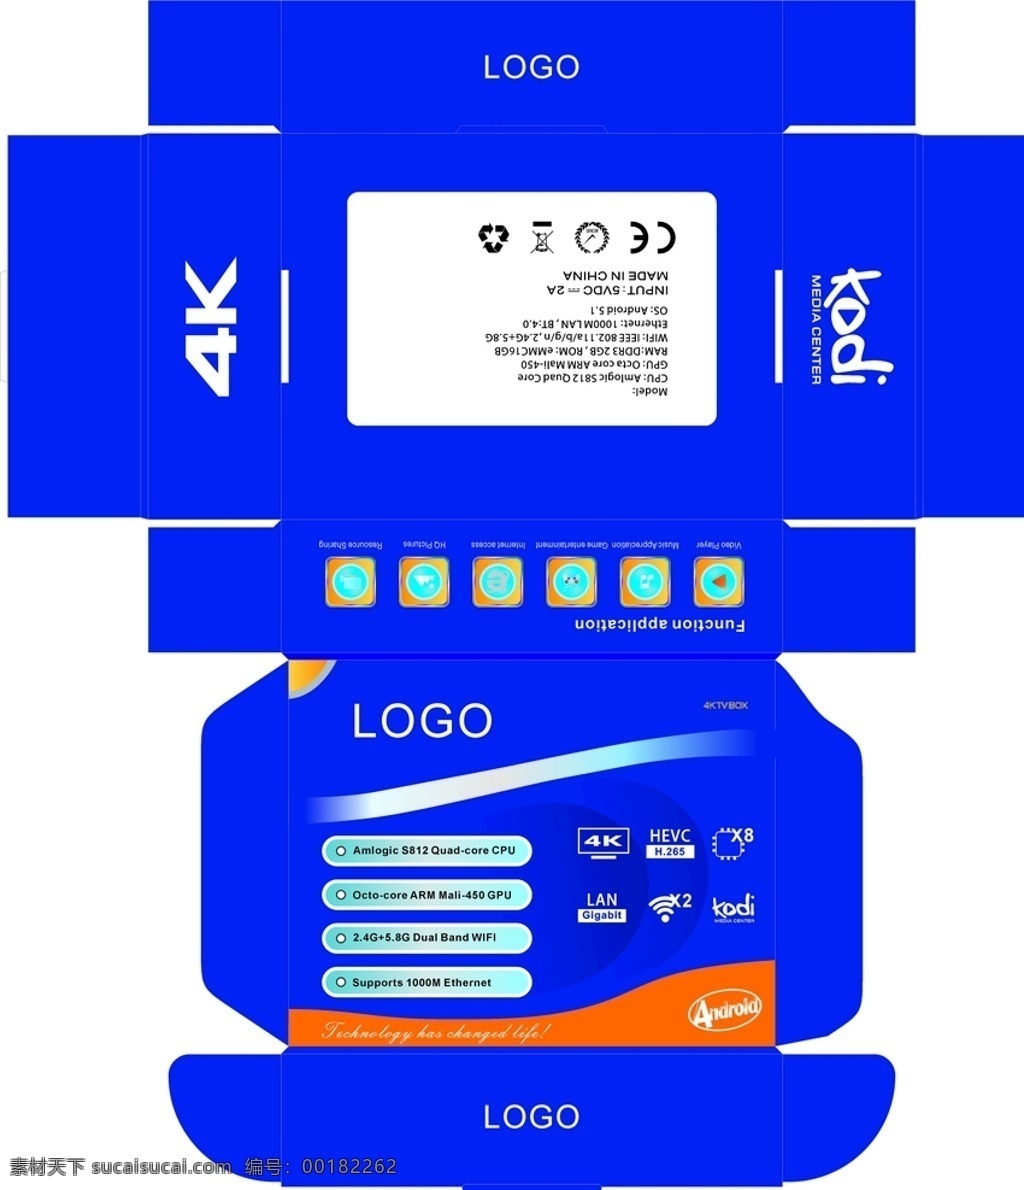 彩盒包装 电子产品 包装 包装盒 包装设计 包装展开图 彩盒 科技 蓝色 蓝色背景